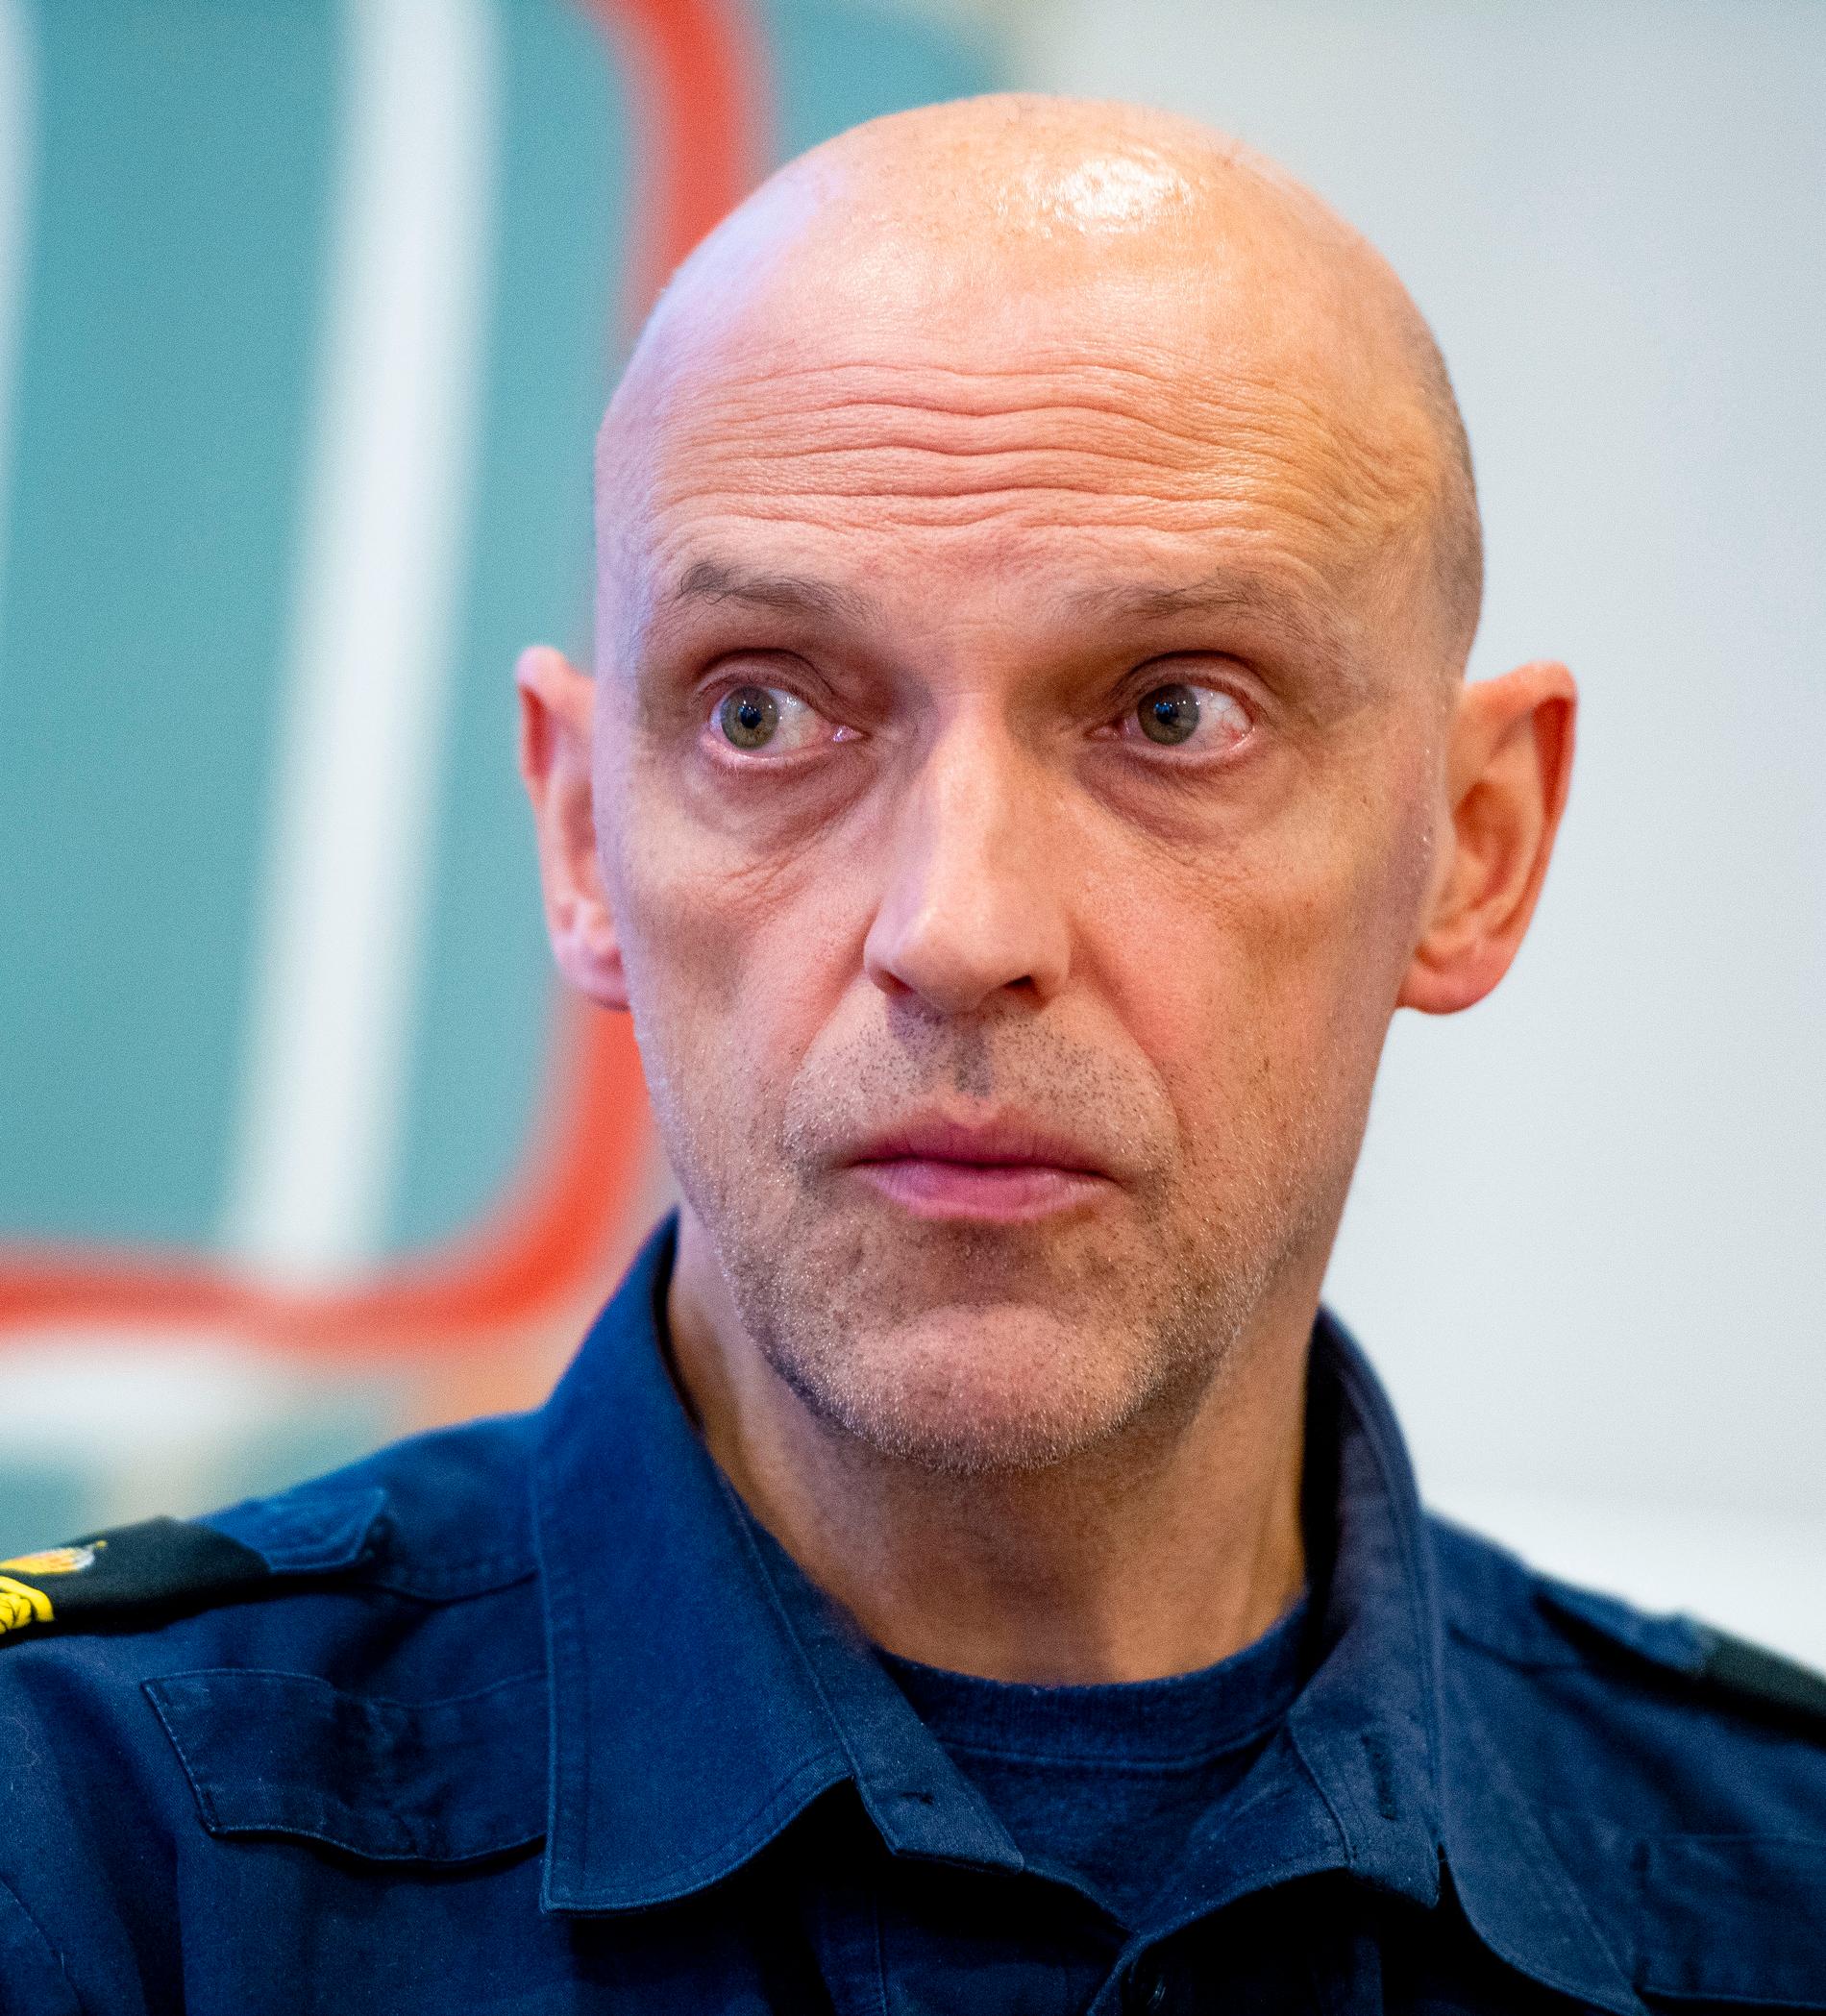 Jale Poljarevius är polismästare och underrättelsechef i polisregion Mitt.